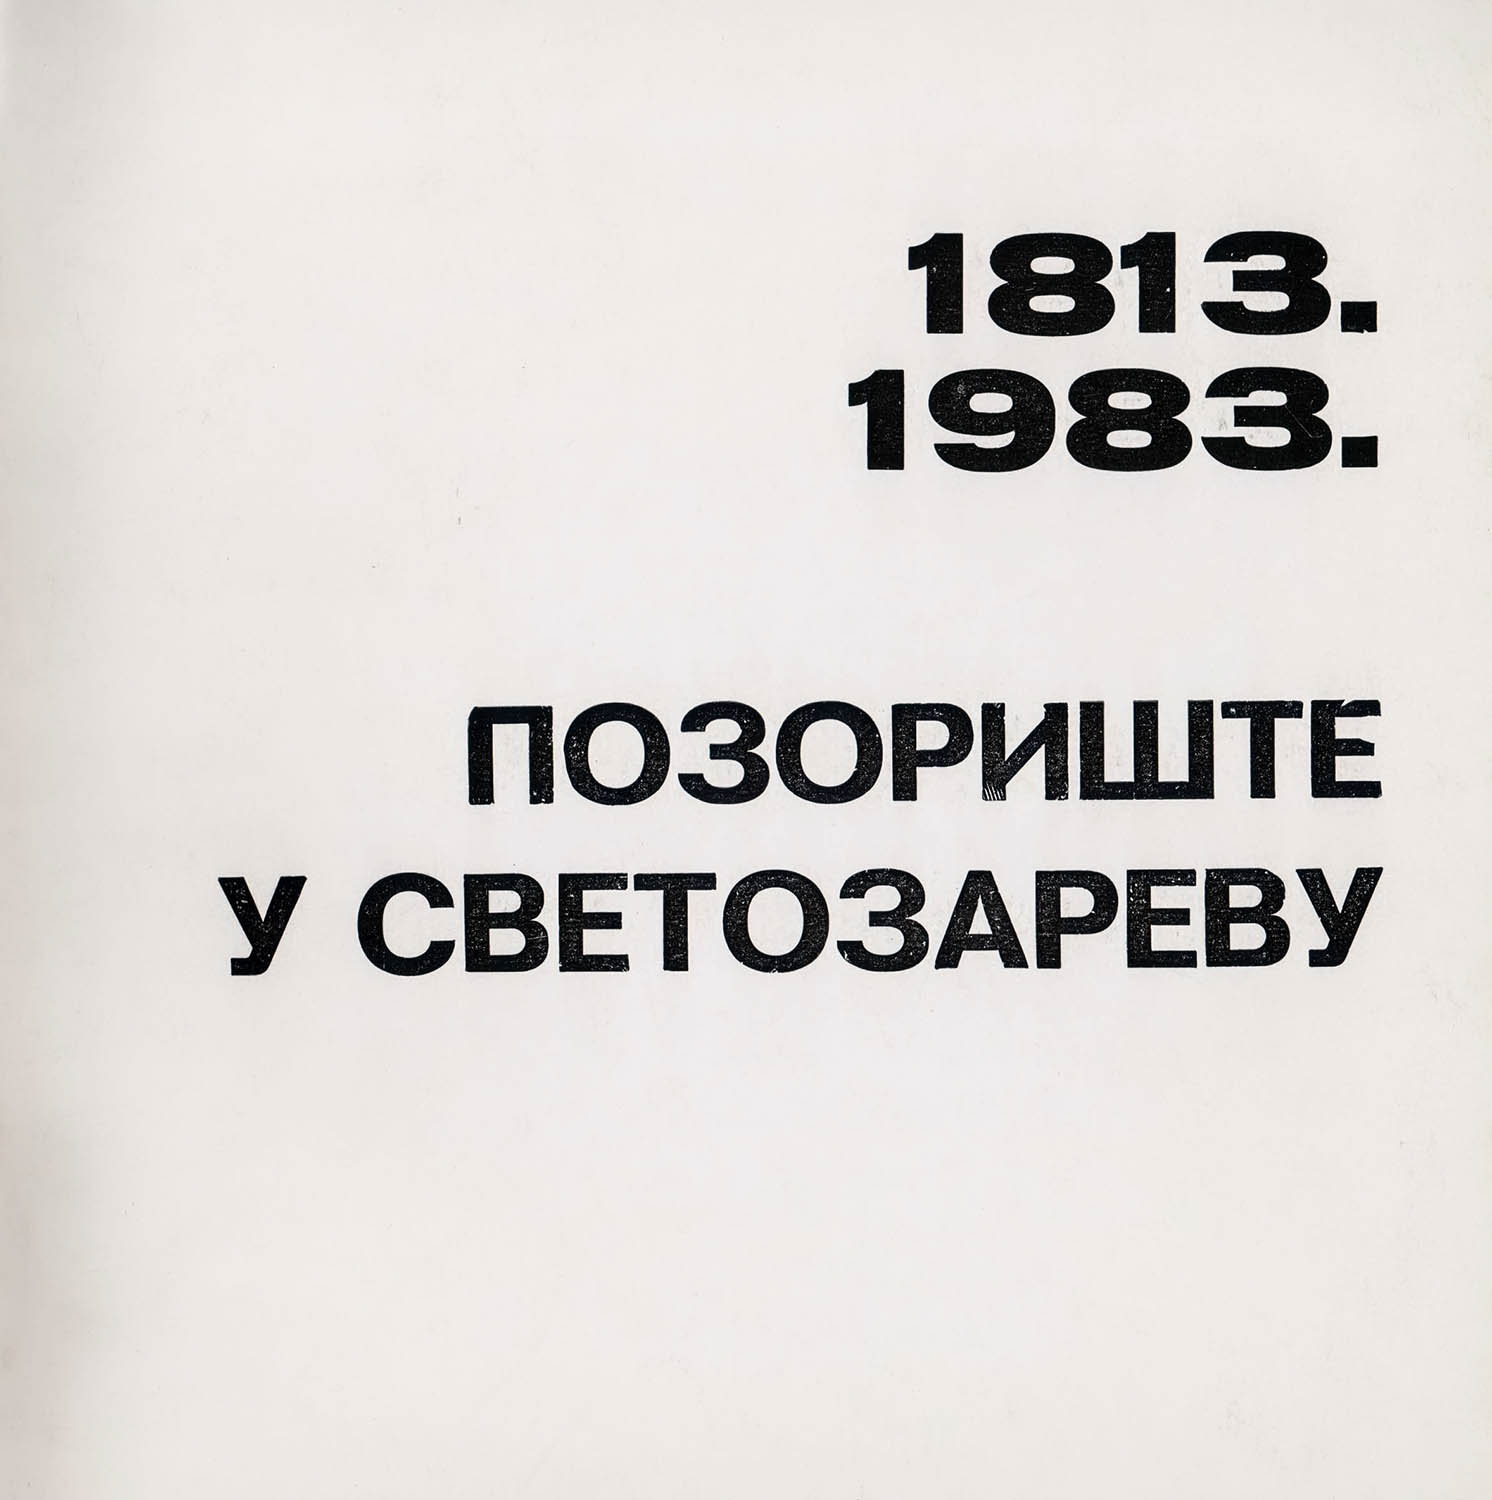 Позориште у Светозареву 1813-1983